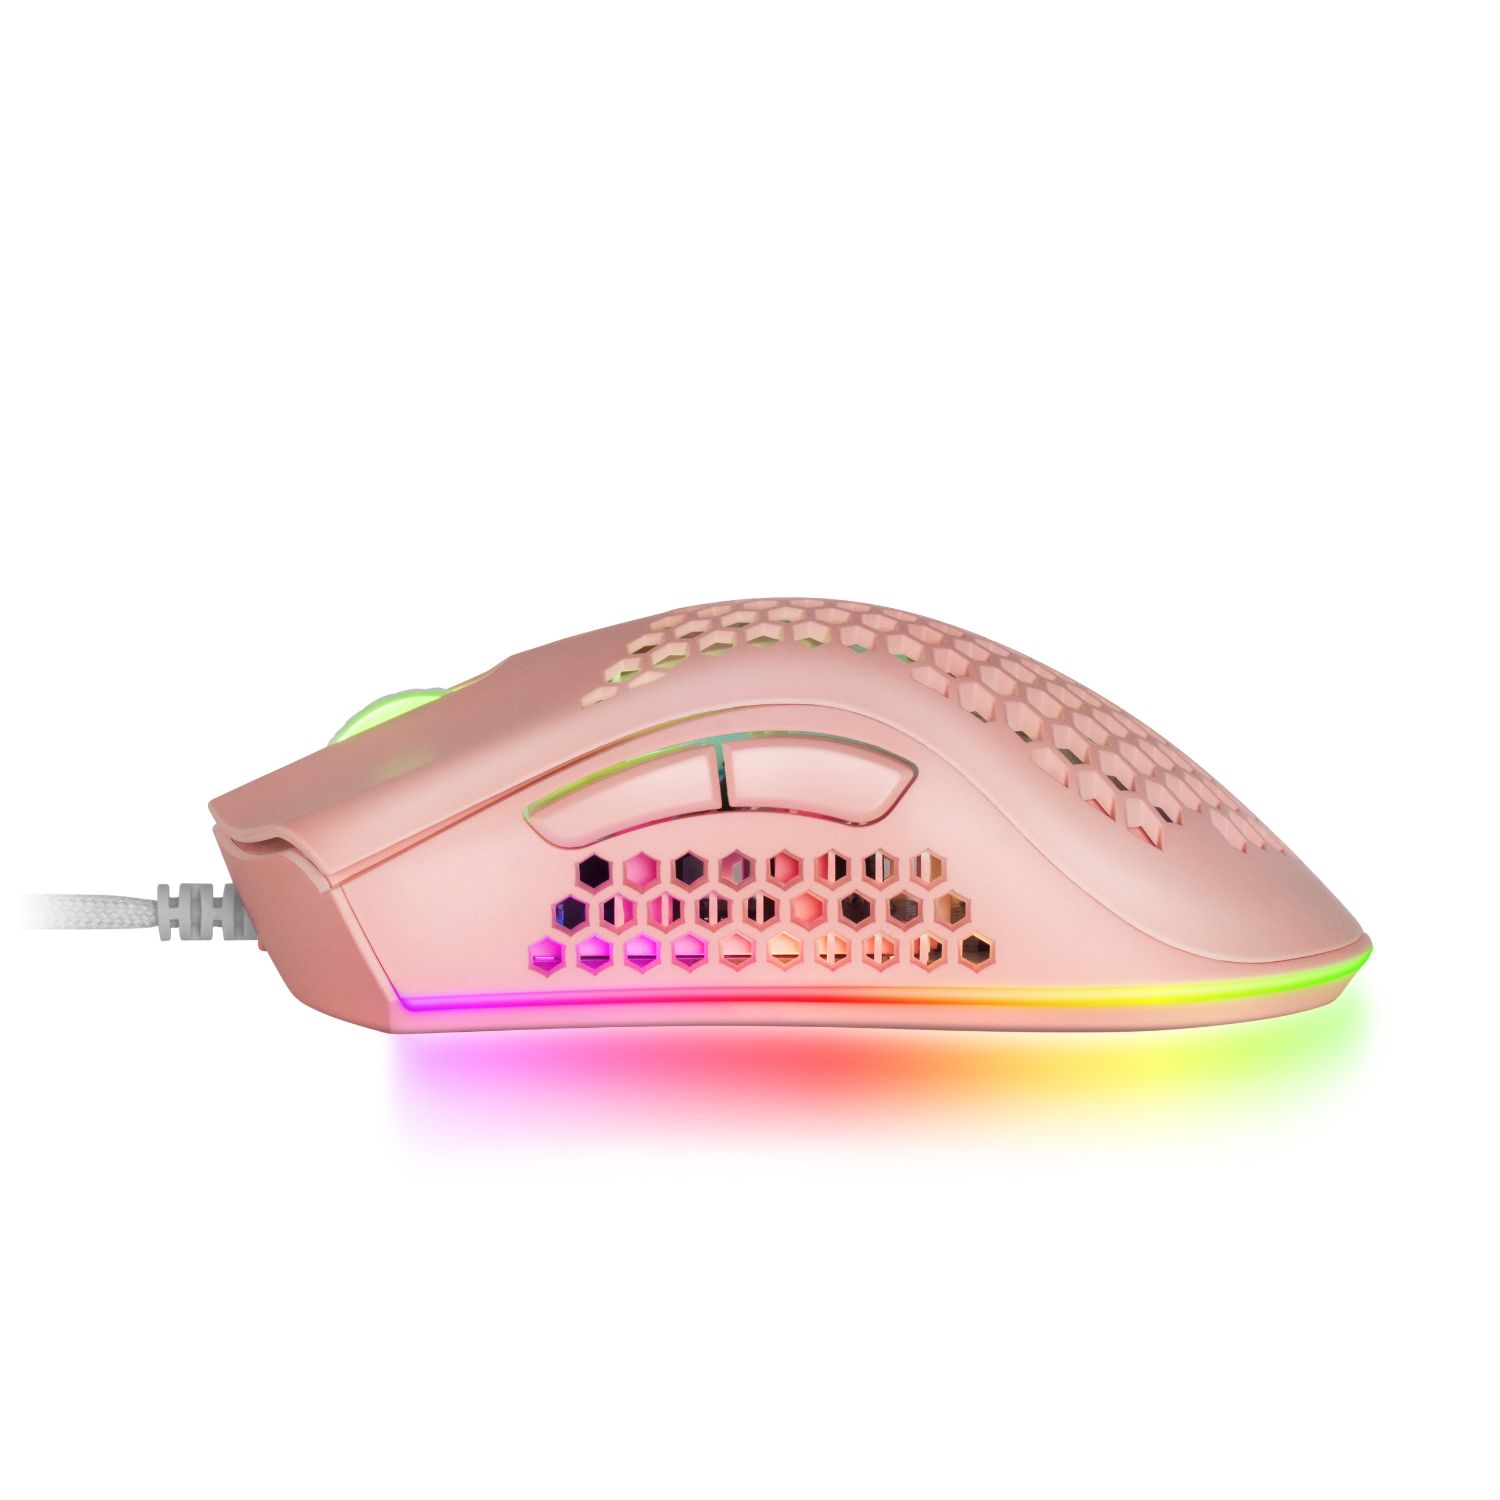 MMEXP - Ratn Mars Gaming ptico Diestro RGB USB-A 32000dpi 7 Botones Cable 1.7m RGB Rosa (MMEXP)